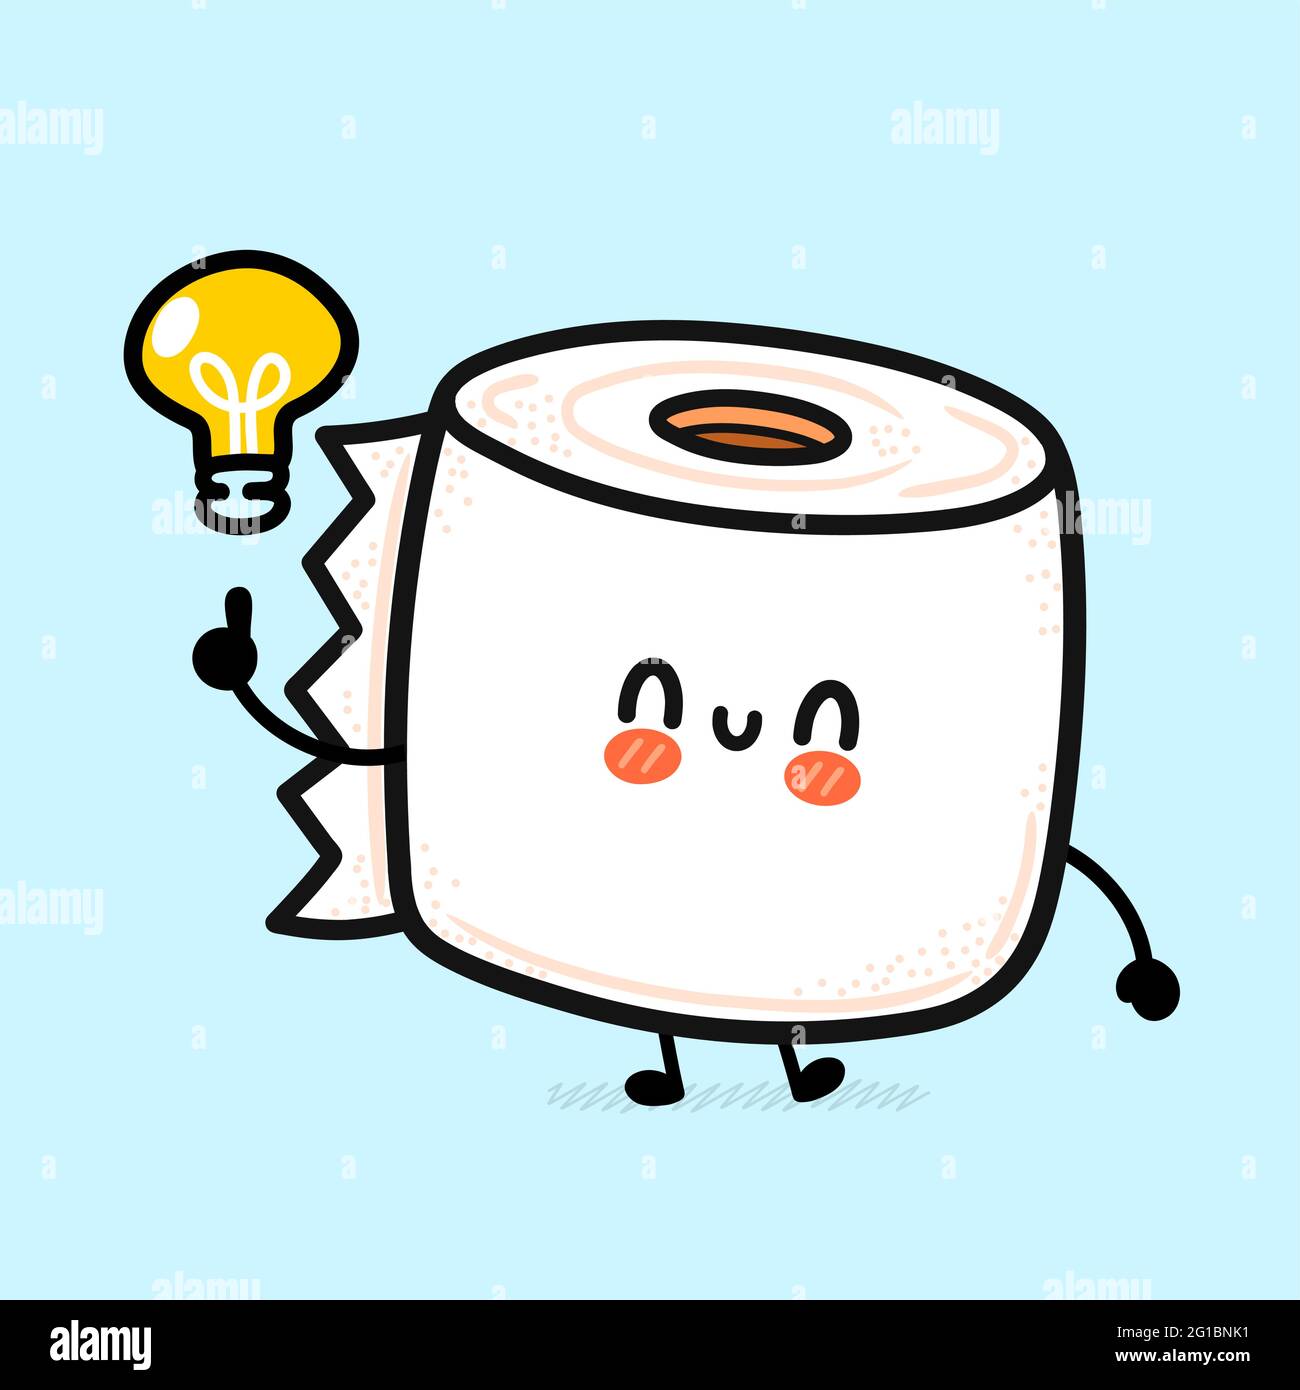 Joli rouleau de papier toilette blanc joyeux avec ampoule Idea. Icône d'illustration de personnage de dessin animé à la main de vecteur kawaii. Drôle de dessin animé papier toilette mascotte concept de personnage Illustration de Vecteur